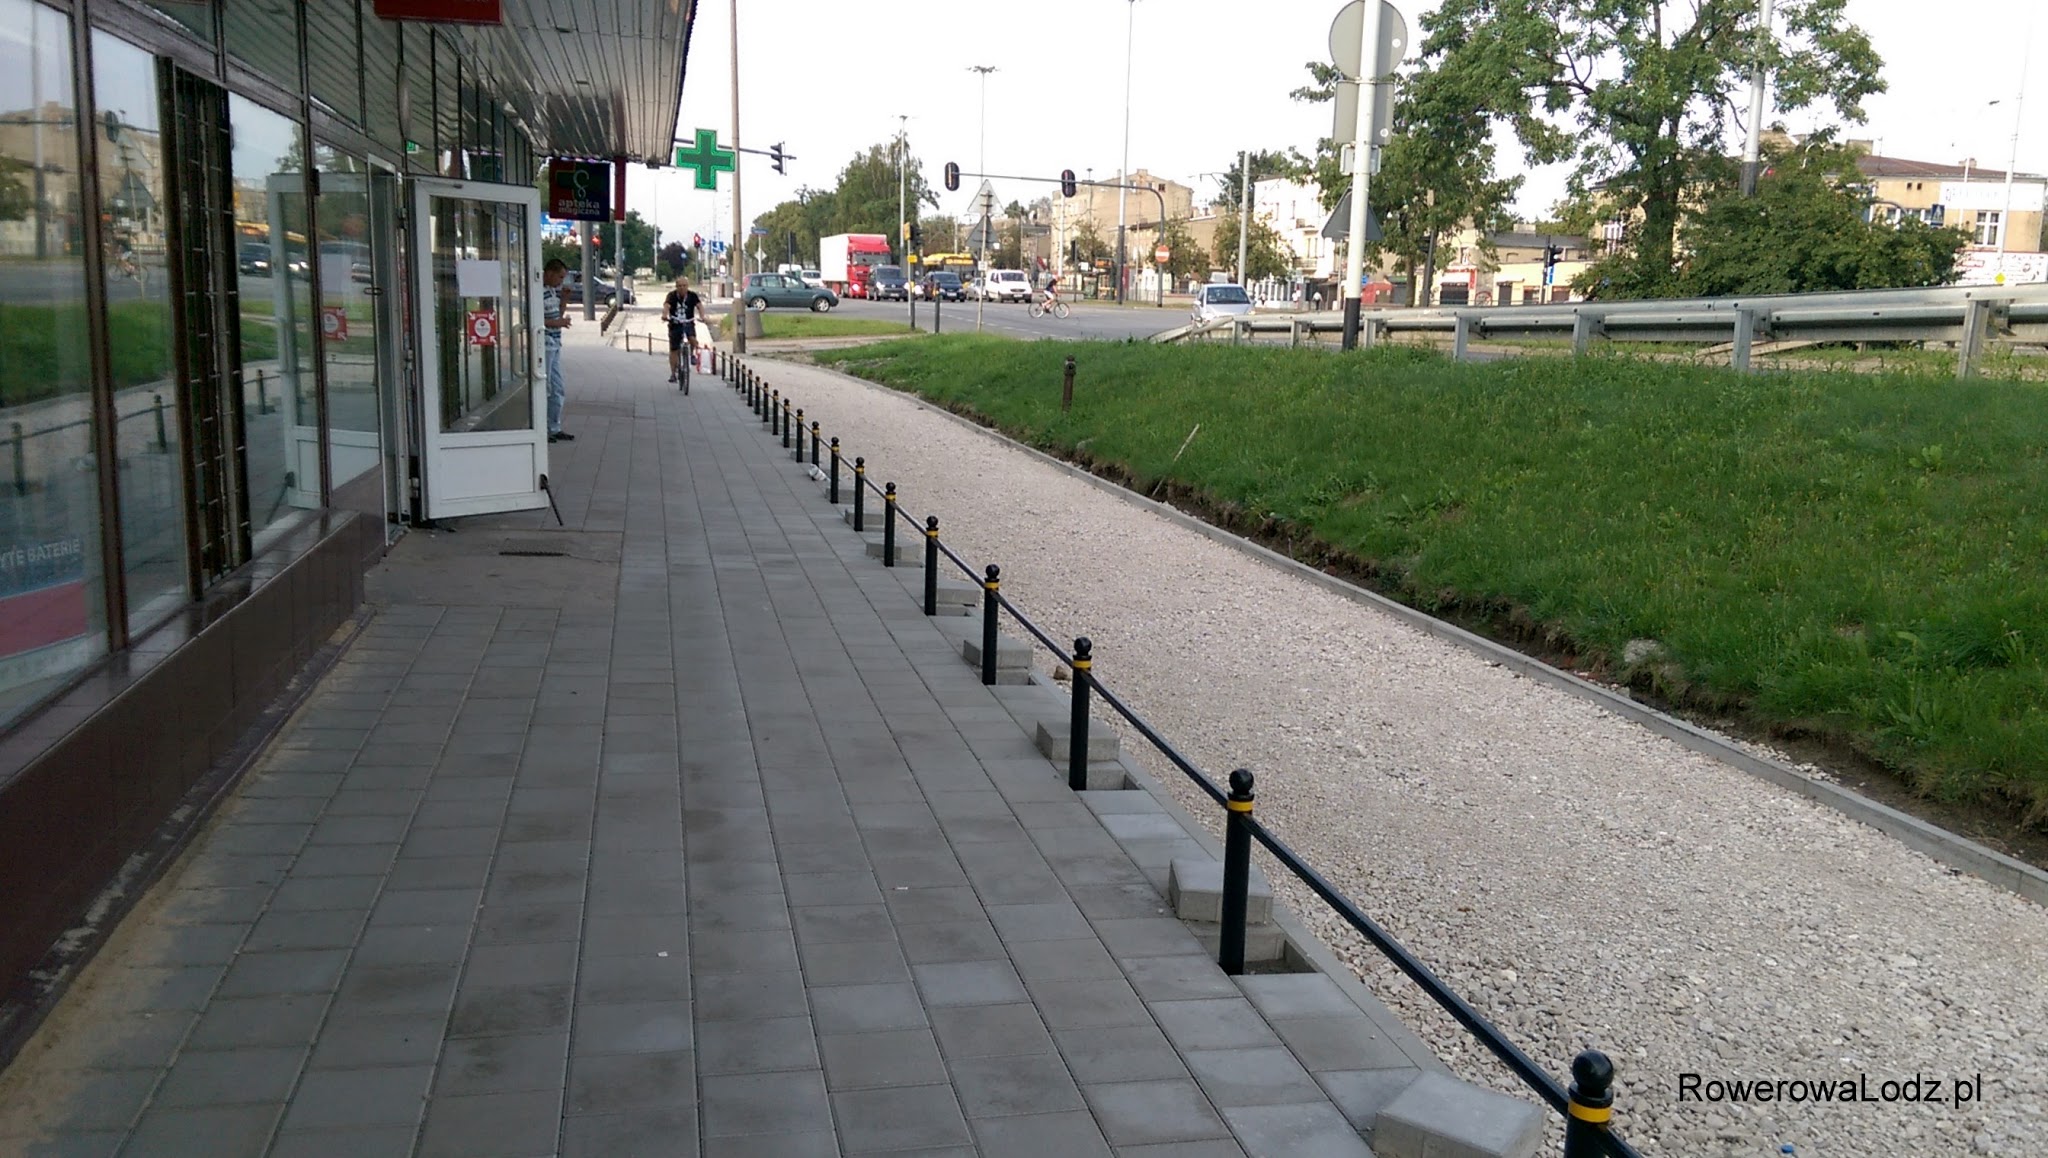 Że dla rowerzysty chcącego dostać się do punktów usługowych po lewej, będzie barierą, której można było uniknąć.